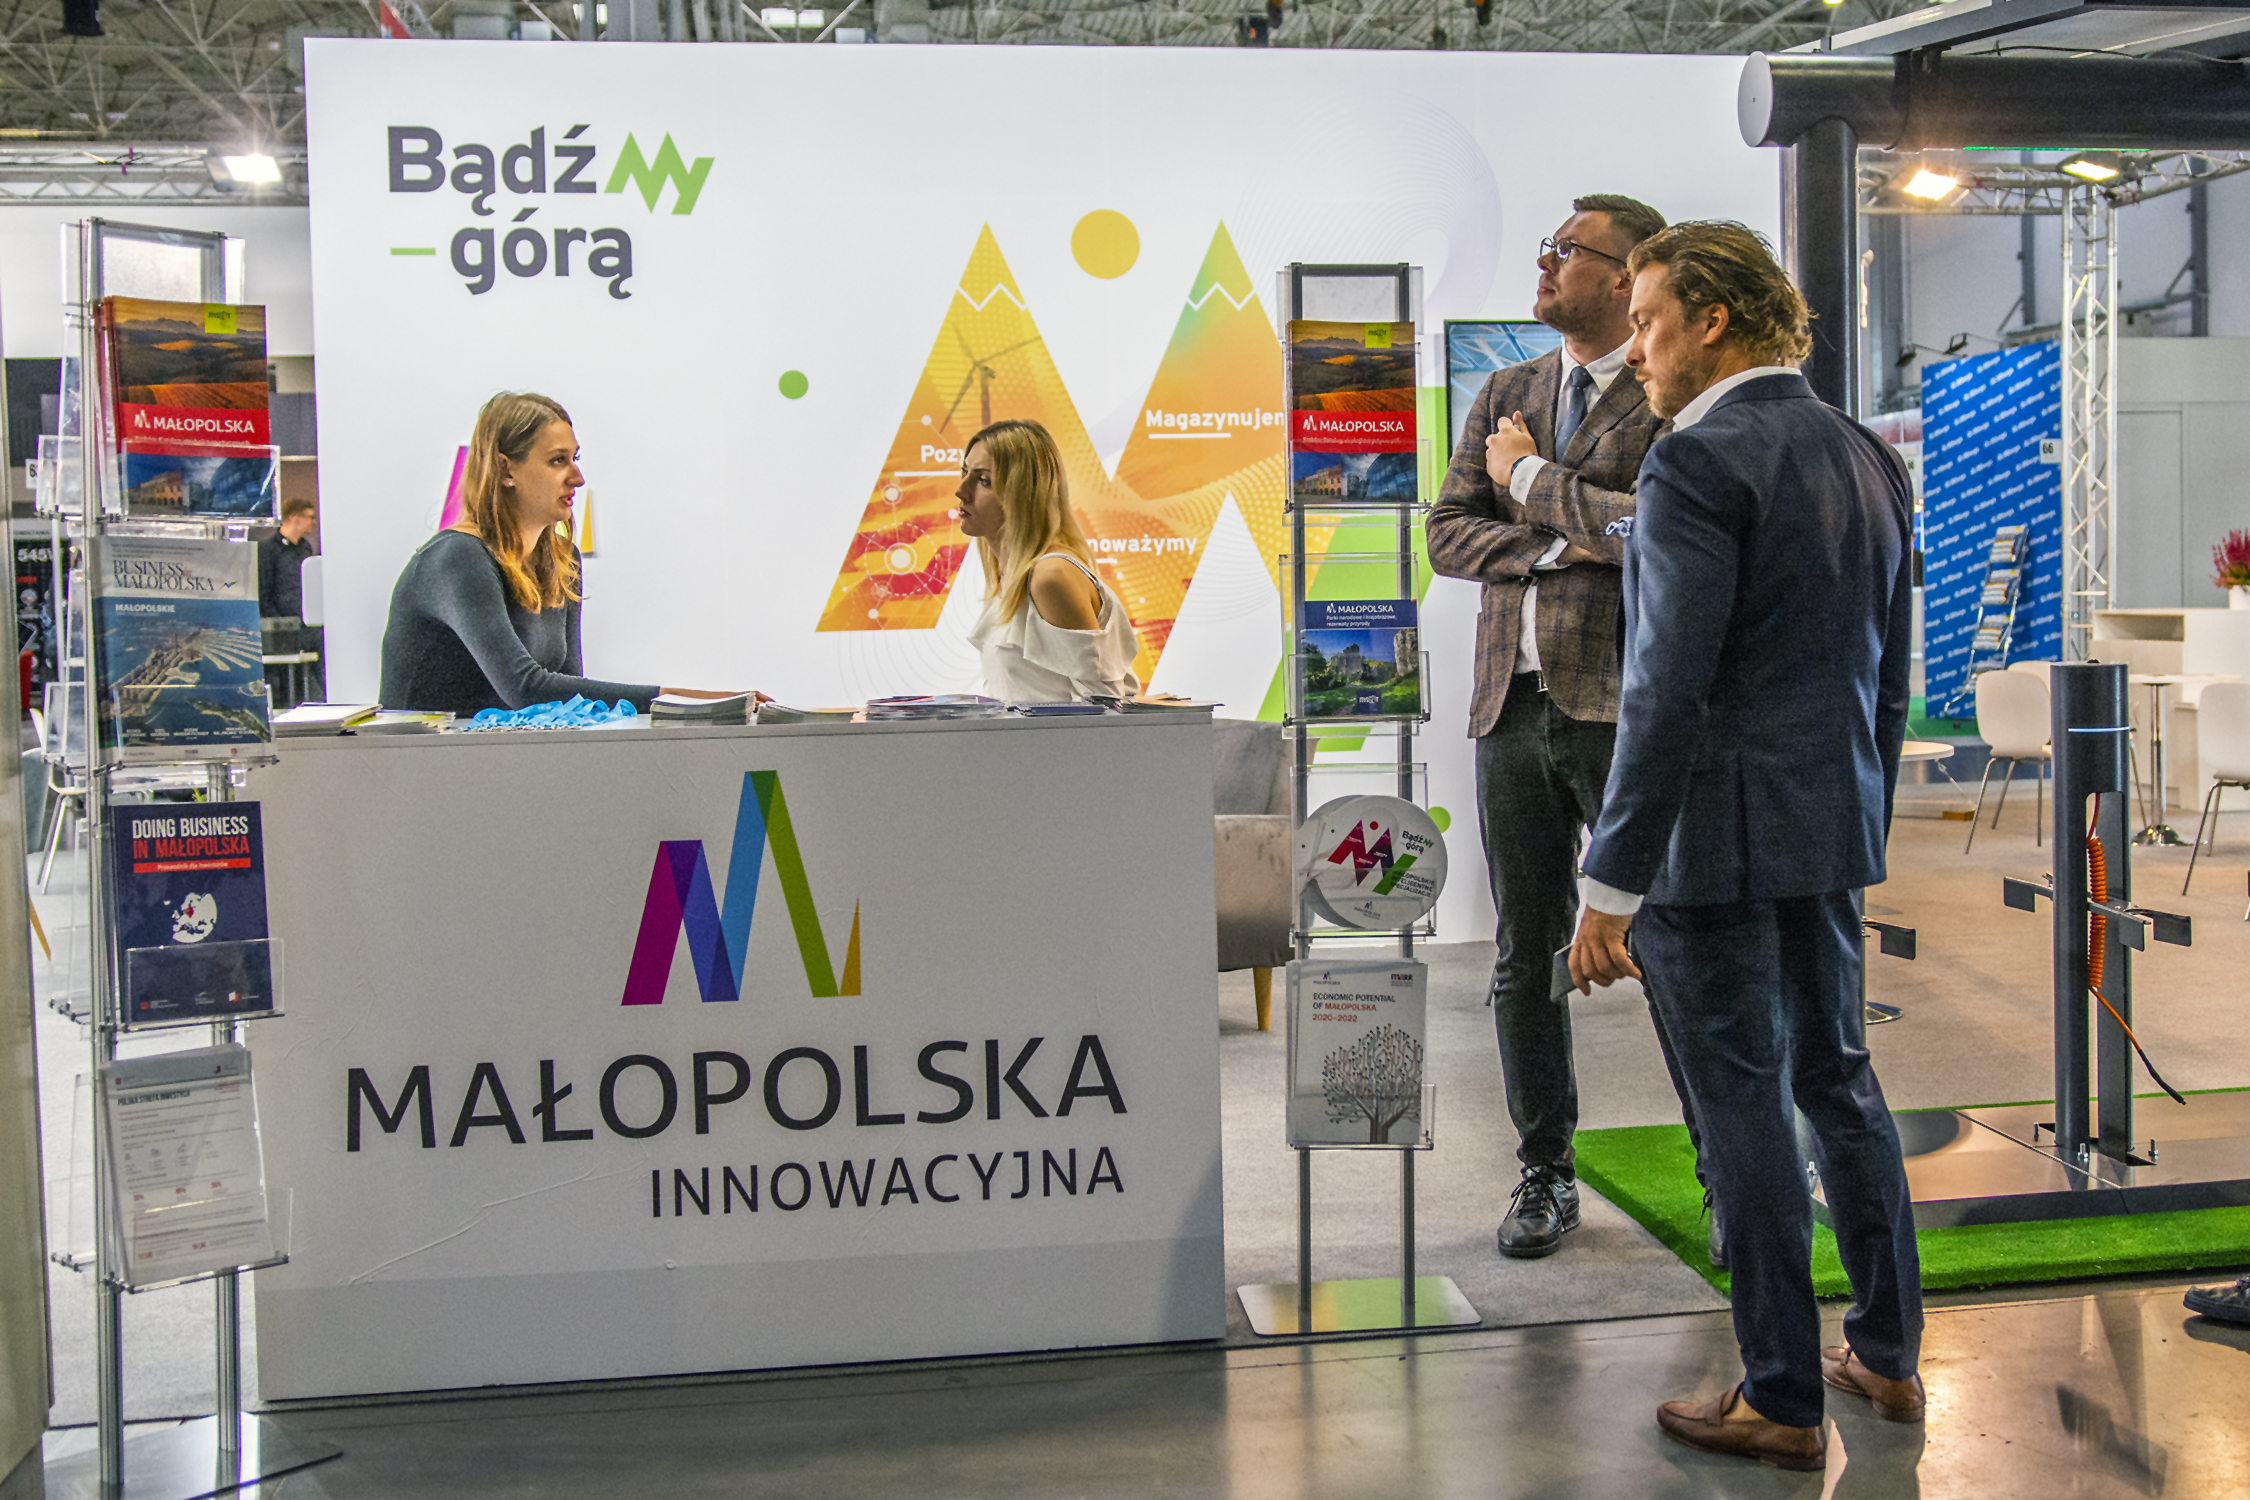 stoisko Małopolski na targach greenPOWER; za ladą dwie hostessy, obo dwóch mężczyzn; na ladzie logo Małopolski innowacyjnej